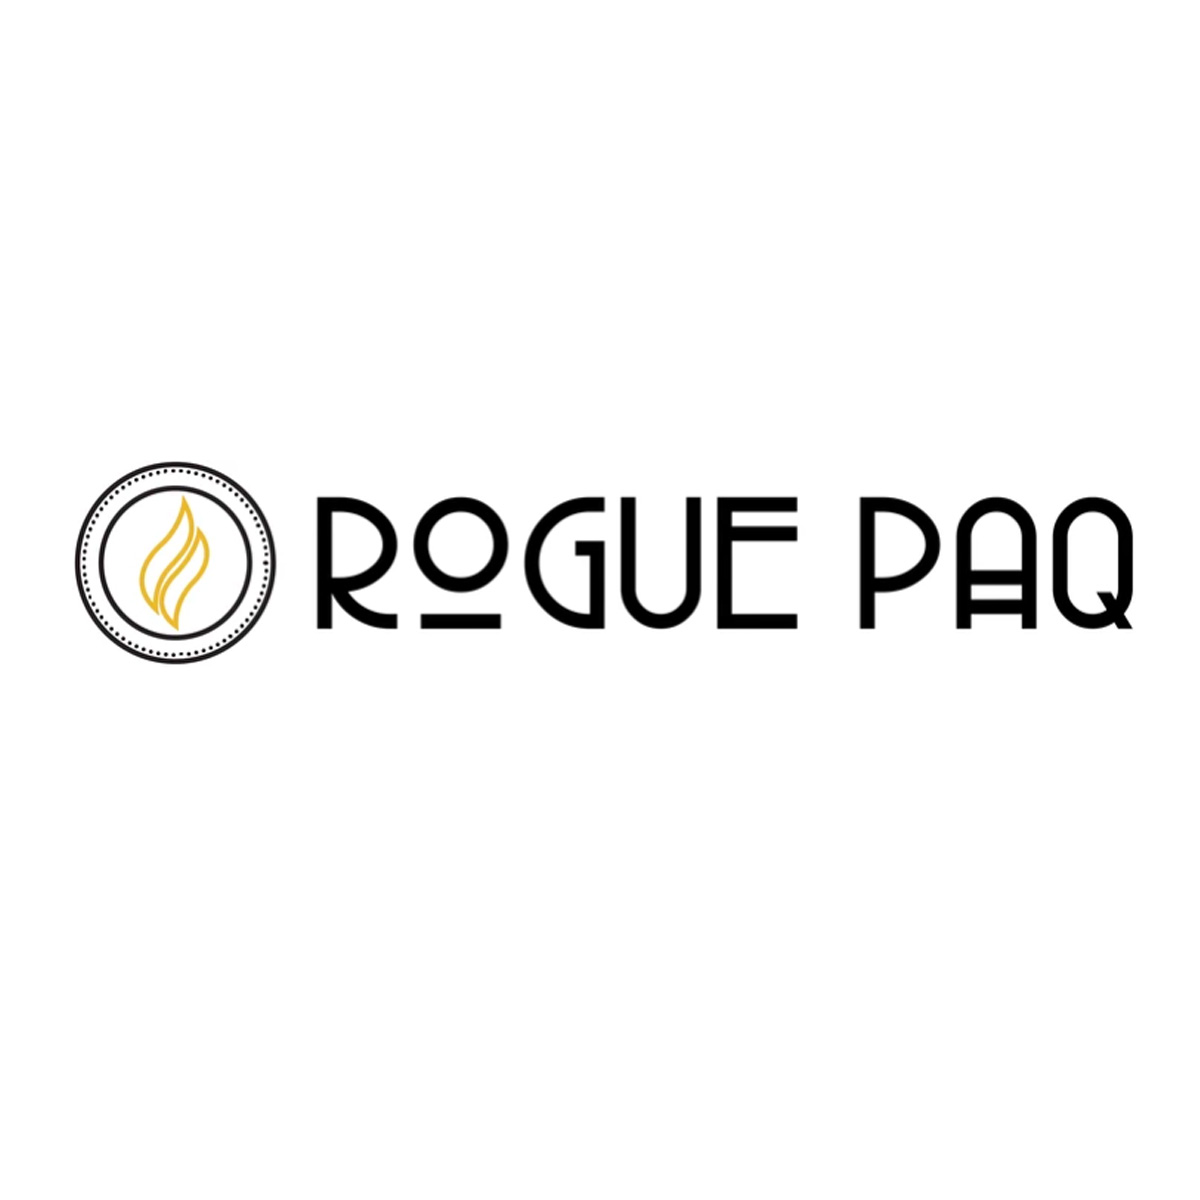 Rogue Paq